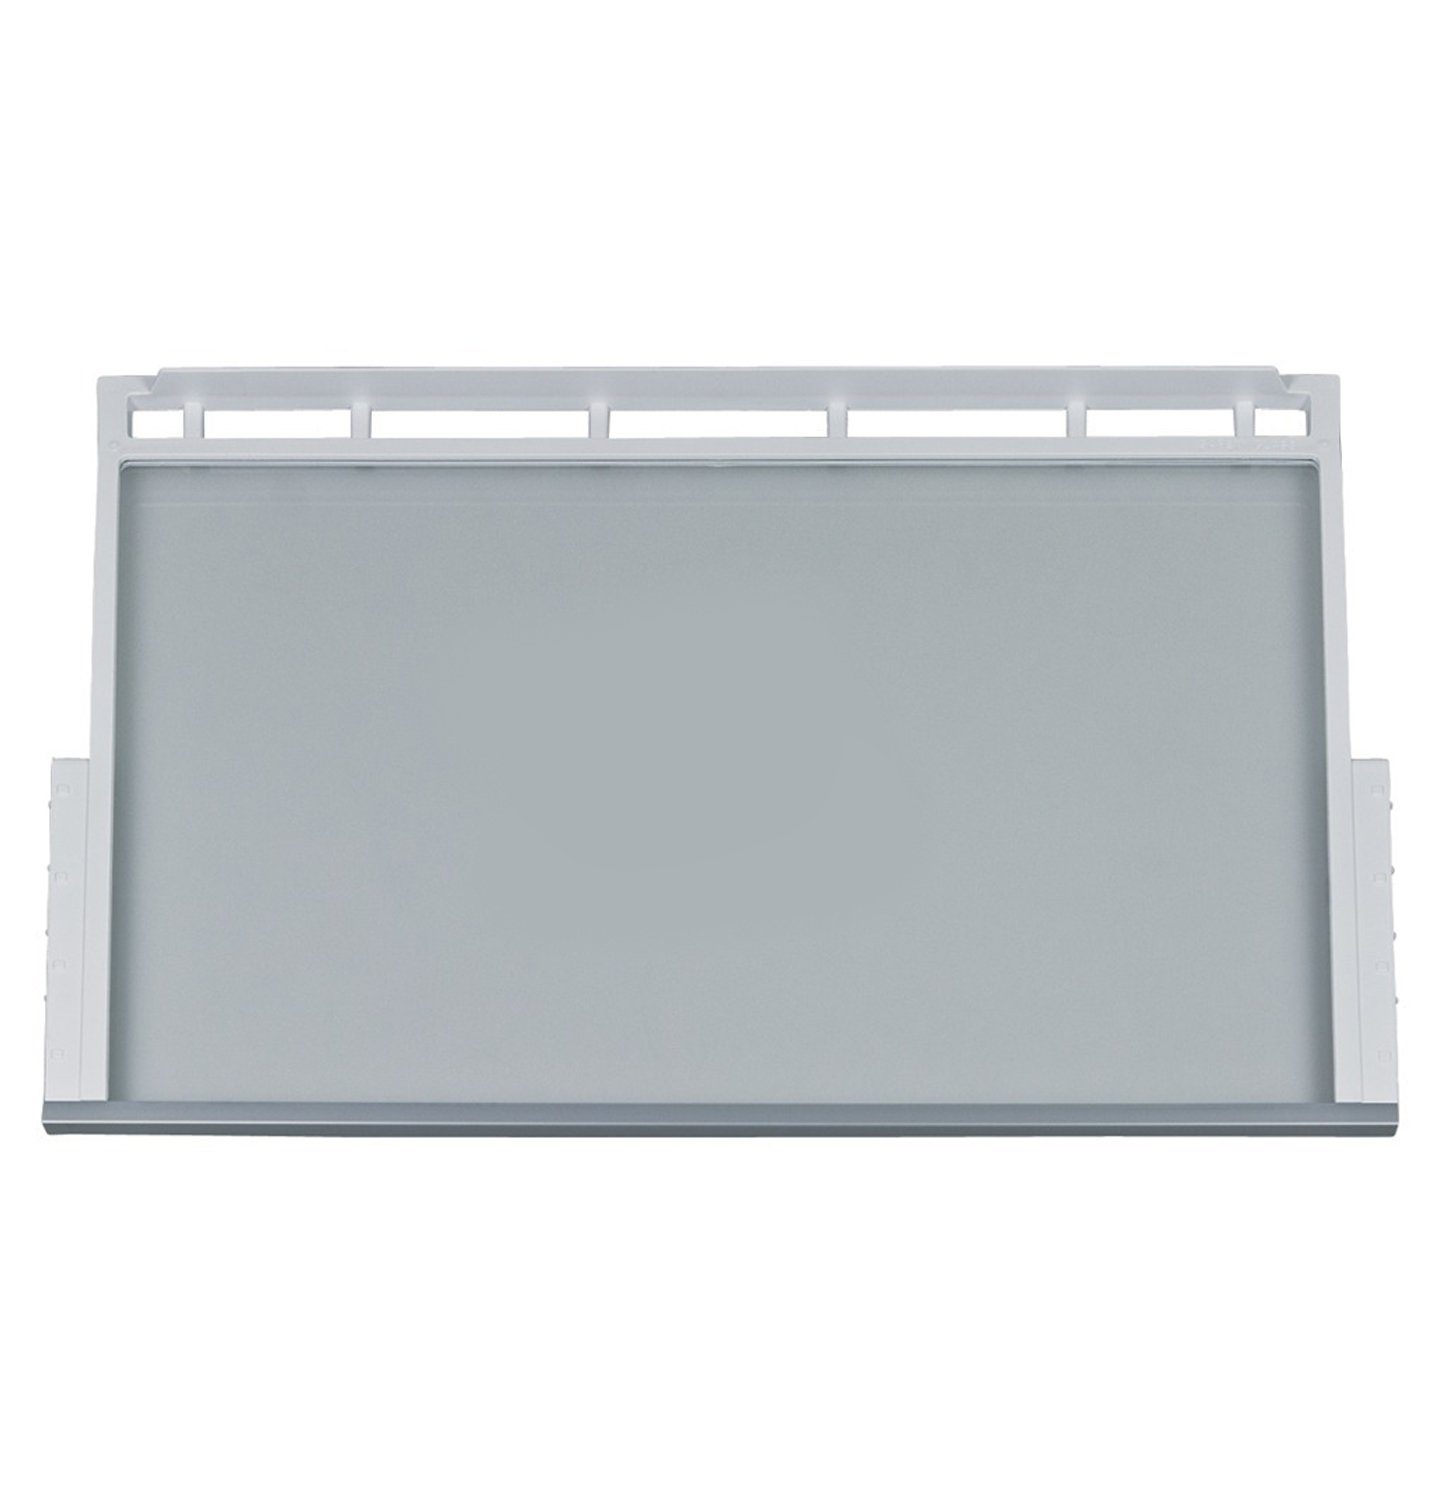 00748397 471x306mm BOSCH für Glasunterlage Einlegeboden Rahmen mit Kühlschrank,